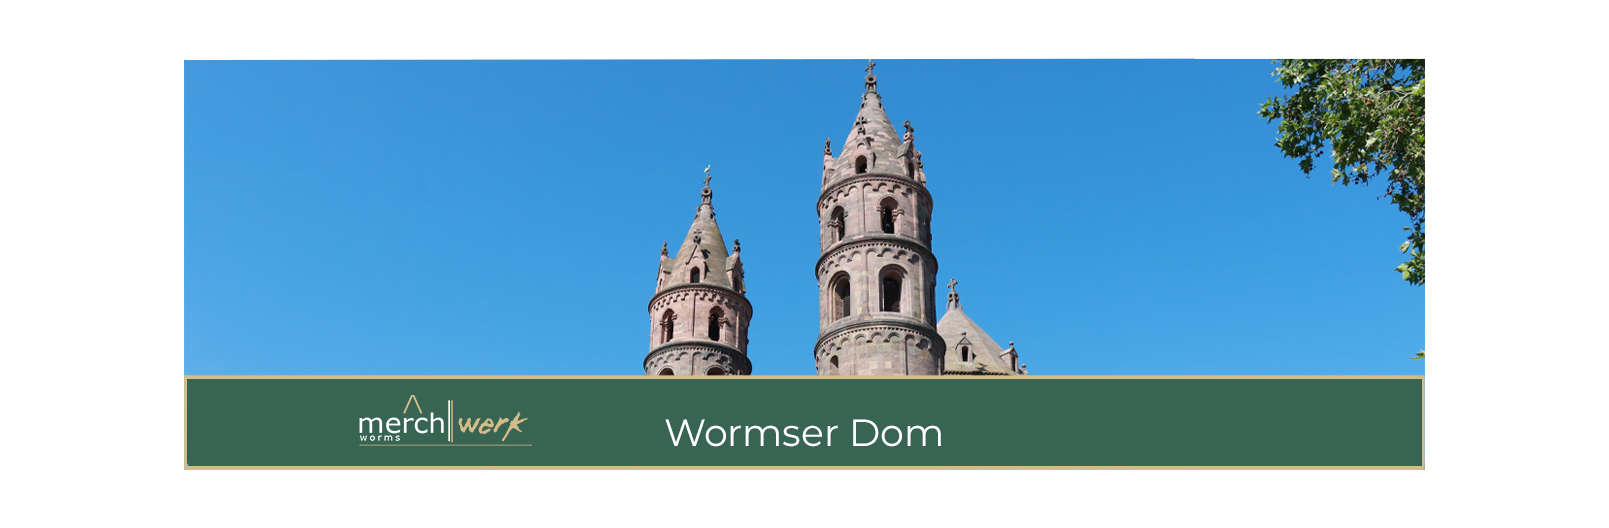 Der Wormser Dom